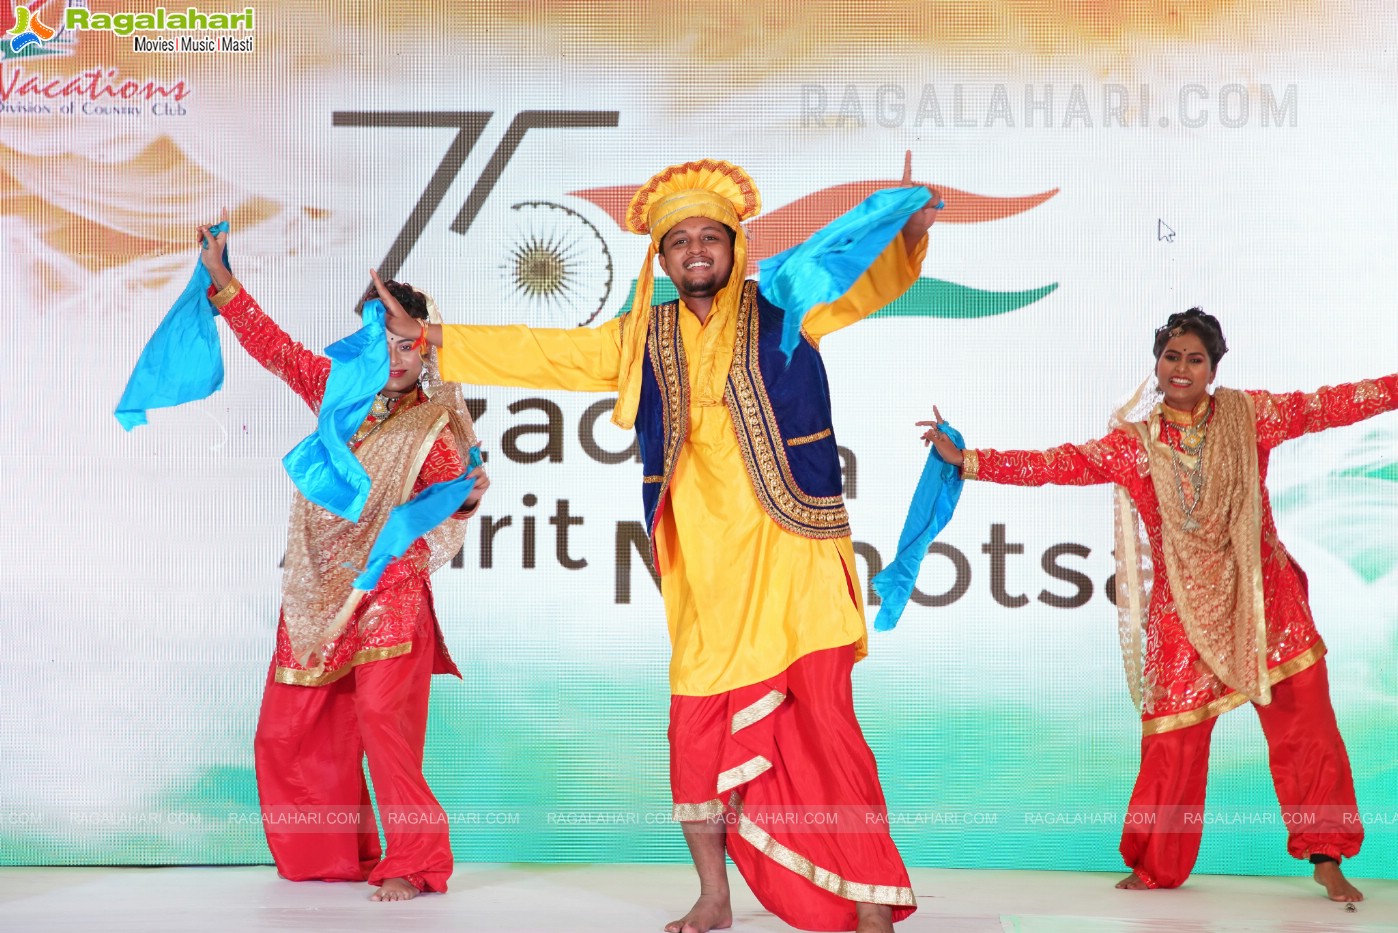 Azadi Ka Amrit Mahotsav - 75th Independence Day Celebrations at Country Club, Begumpet